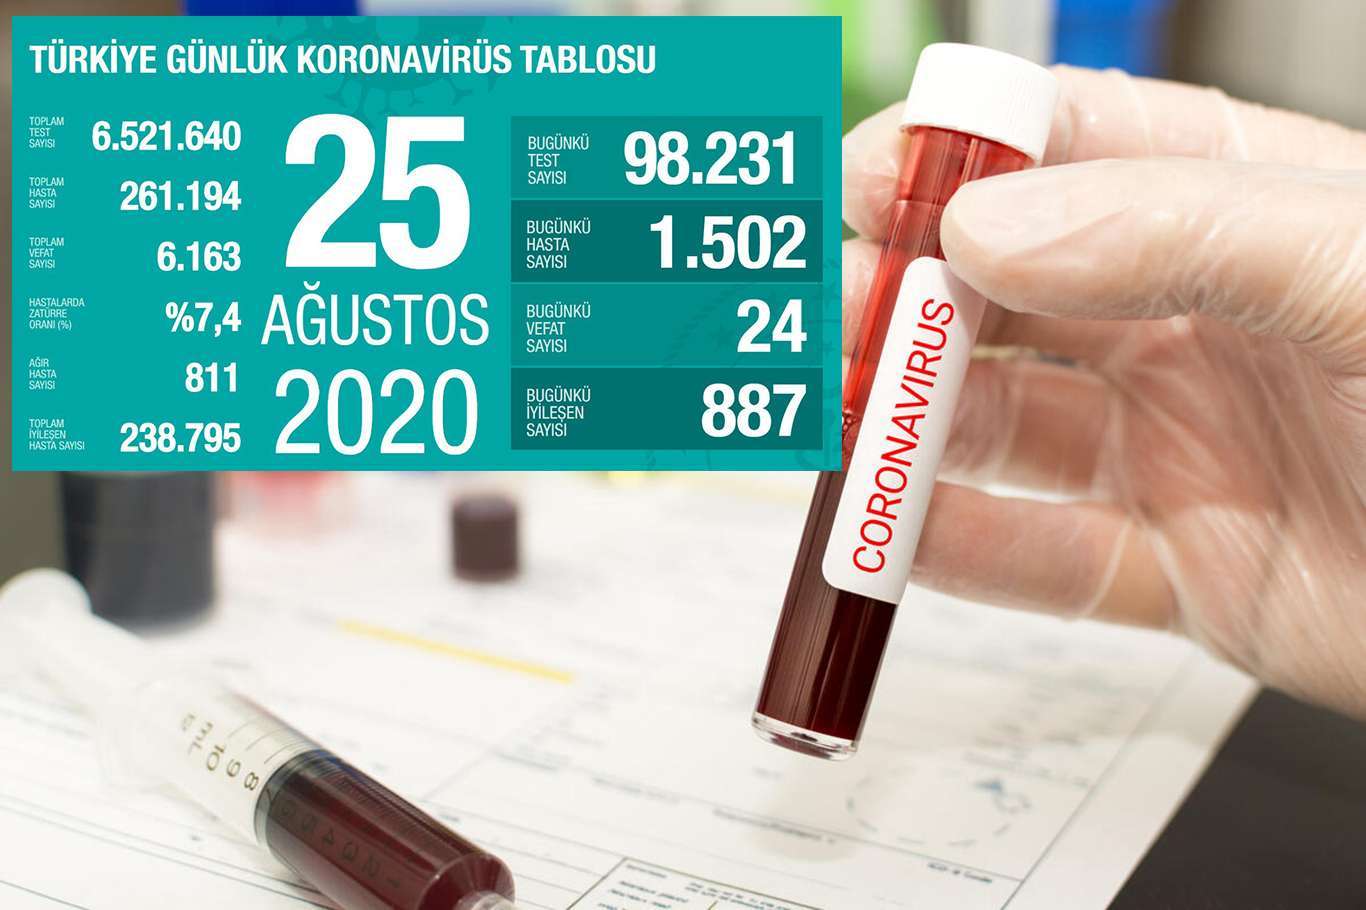 Turkey’s death toll from coronavirus reaches 6,163